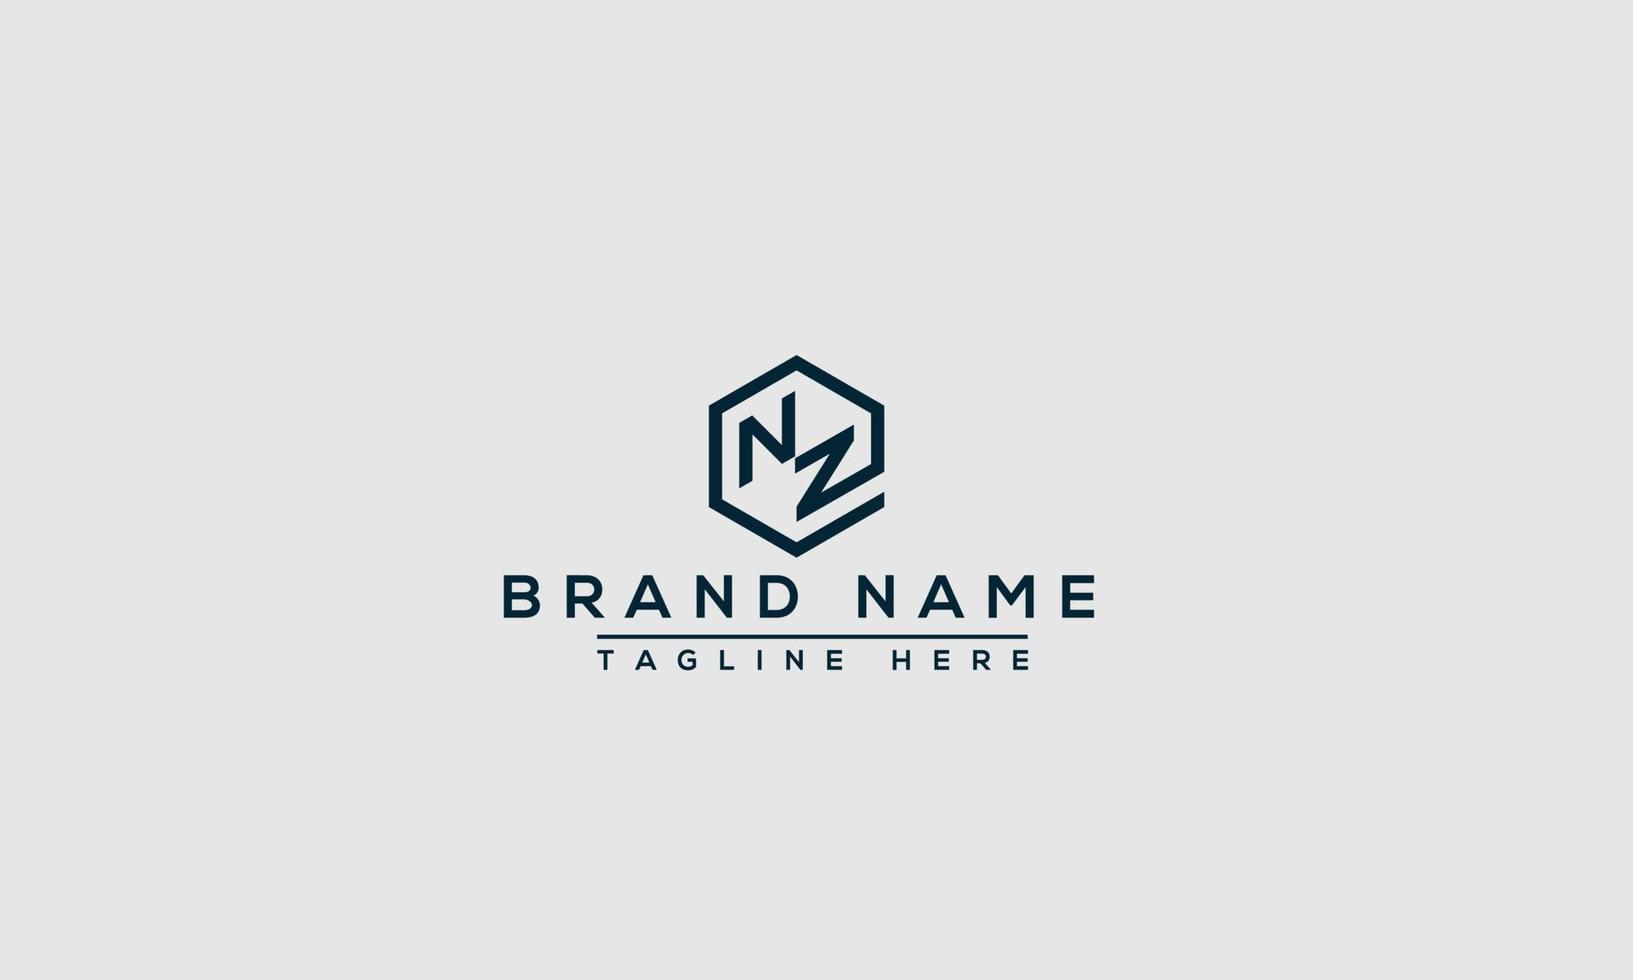 elemento de branding gráfico de vetor de modelo de design de logotipo nz.